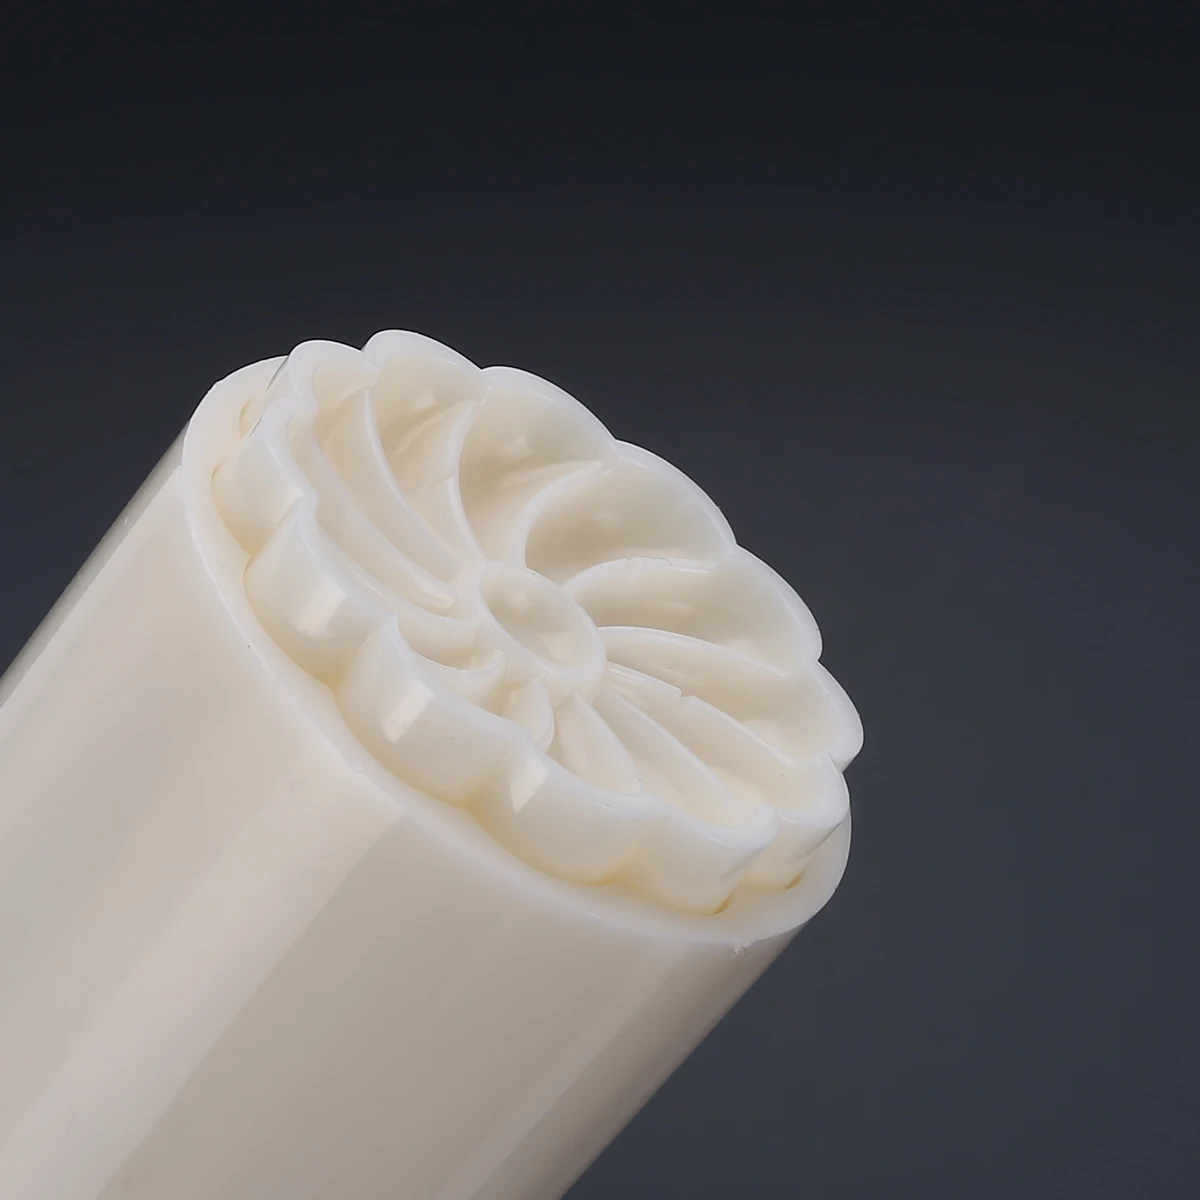 3D Mooncake плесень цветок розы помадка Формочки печенья конфеты плесень DIY Ручной пресс-формы инструменты для приготовления пищи 1 баррель 6 штампов